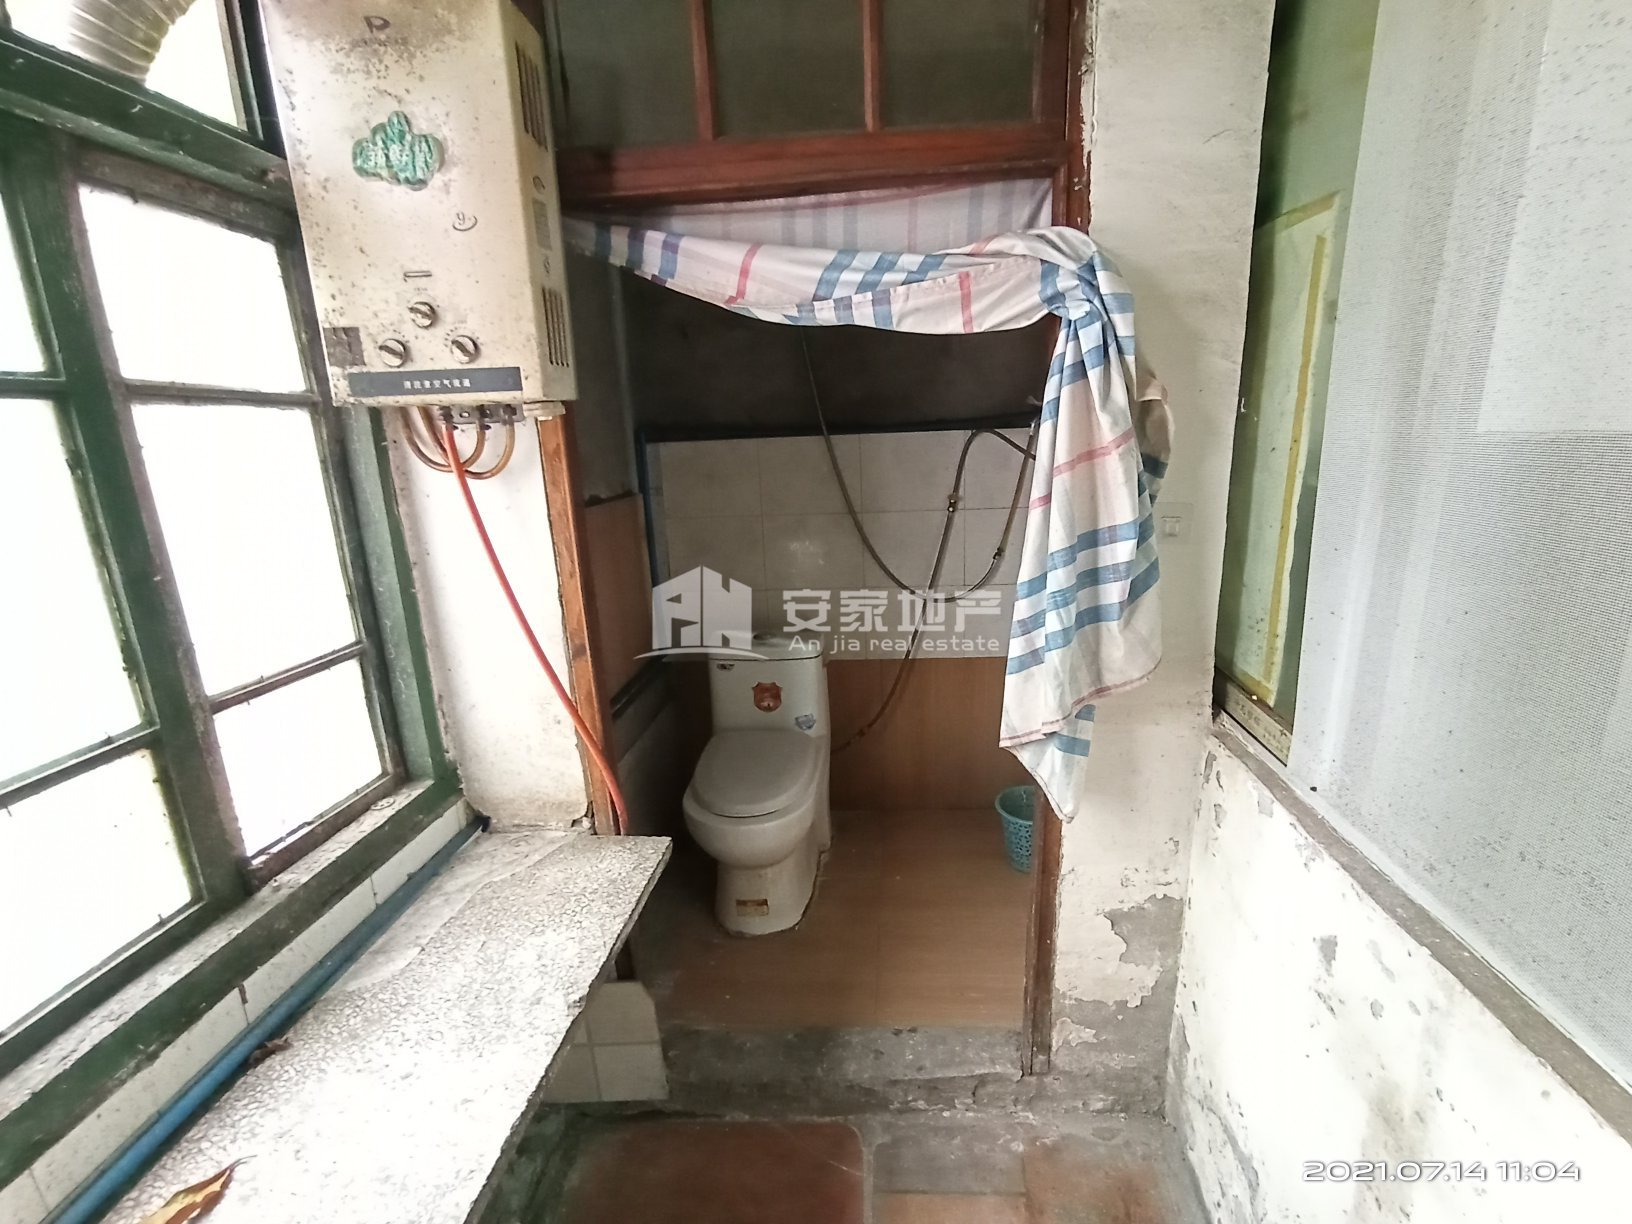 东方鑫村,这个房子 可用于体验生活 磨砺心志 卧薪尝胆4